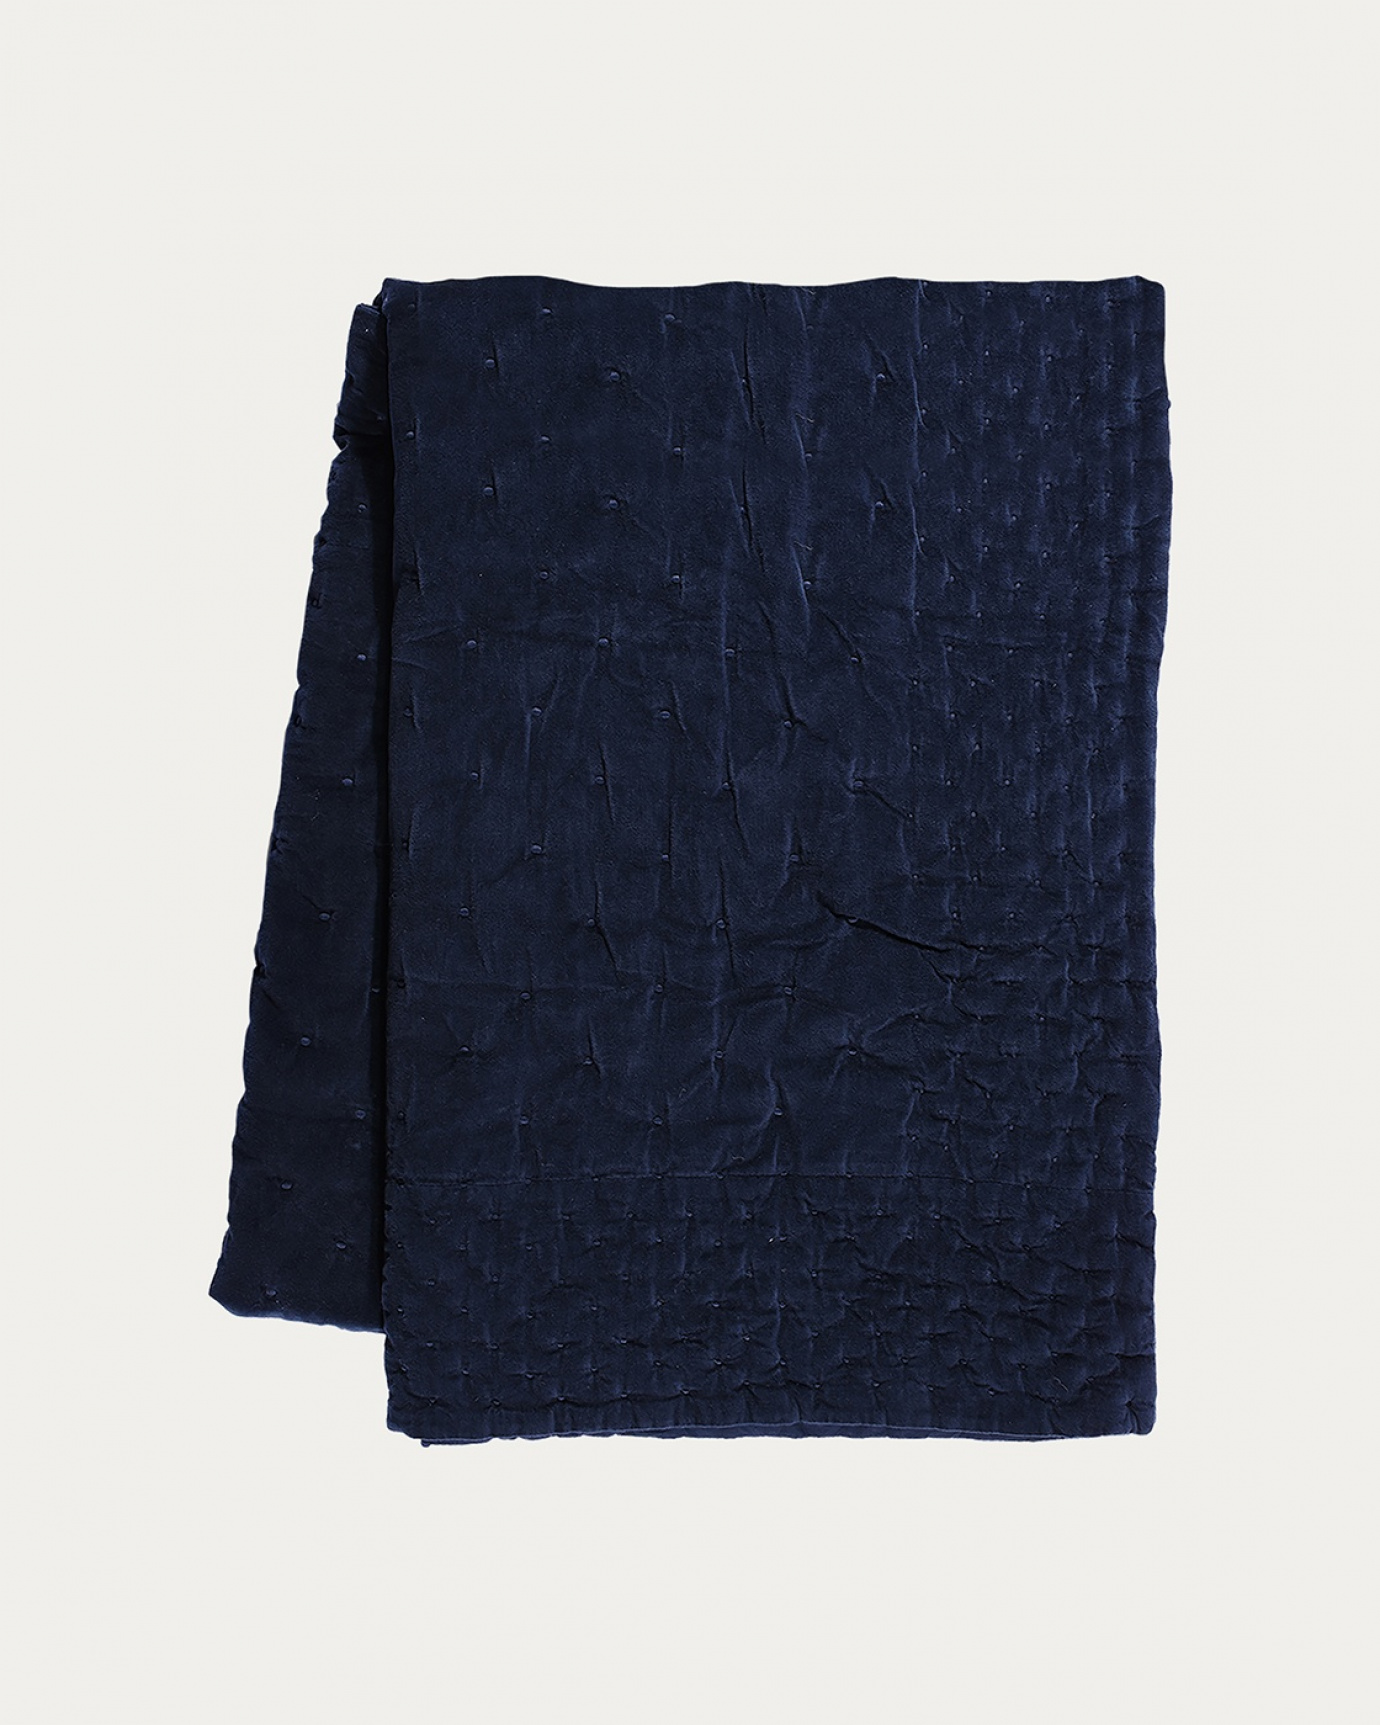 Image du produit couvre-lit PAOLO bleu outre mer en velours de coton doux pour lit double de LINUM DESIGN. Taille 270 x 260 cm.